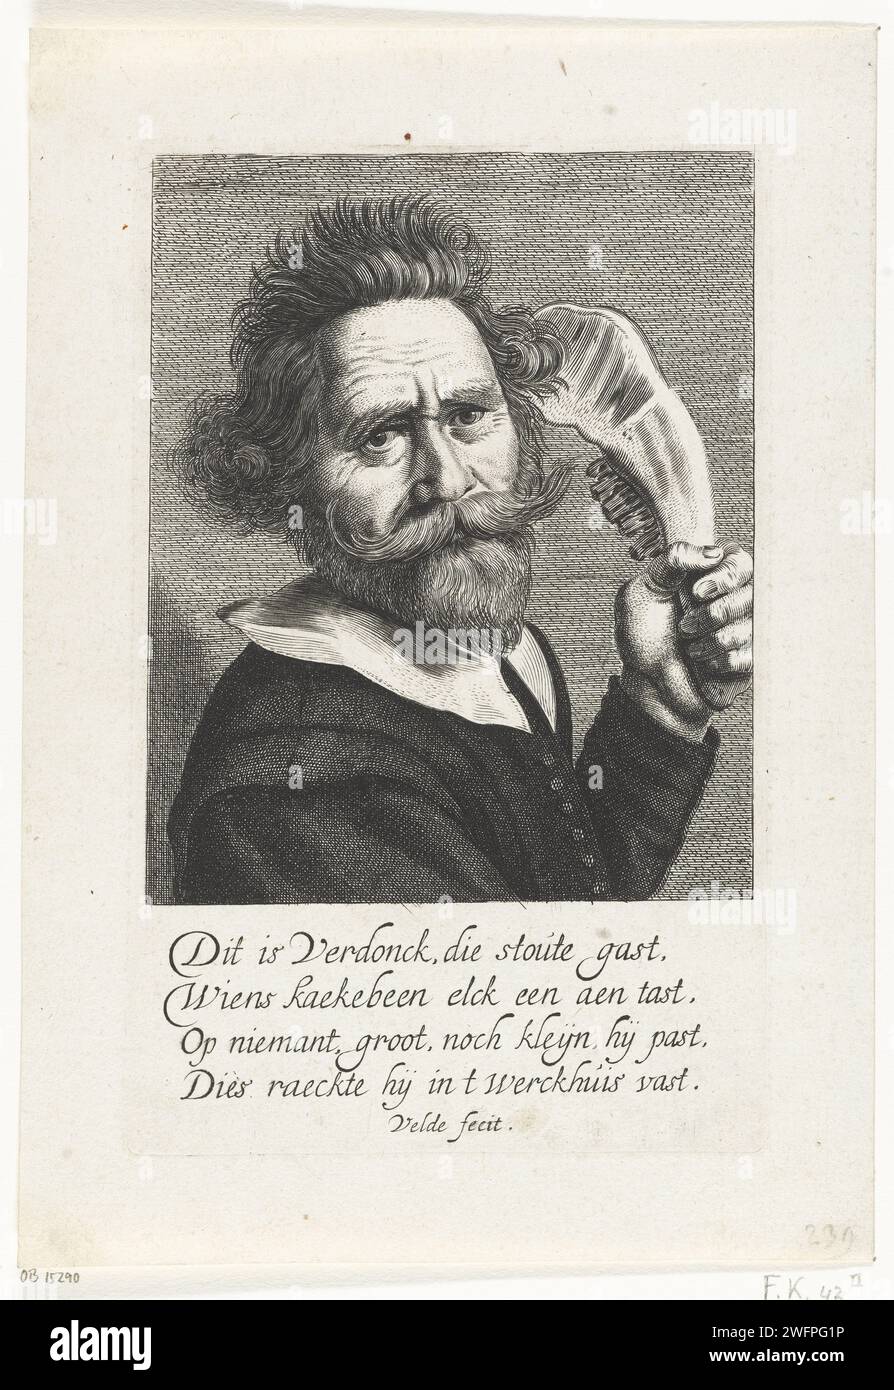 Ritratto di Verdonck, con mascella d'asino, Jan van de Velde (II), dopo Frans Hals, 1603 - 1641 stampa Ritratto di un reggiseno selvatico sconosciuto con il nome Verdonck, con mascella d'asino nella mano sinistra. Con quattro righe di didascalia olandese, a cui si dice che sia finito in officina. Incisione su carta dei Paesi Bassi settentrionali con mascella di un asino Samson uccide mille Filistei (+ variante) Foto Stock